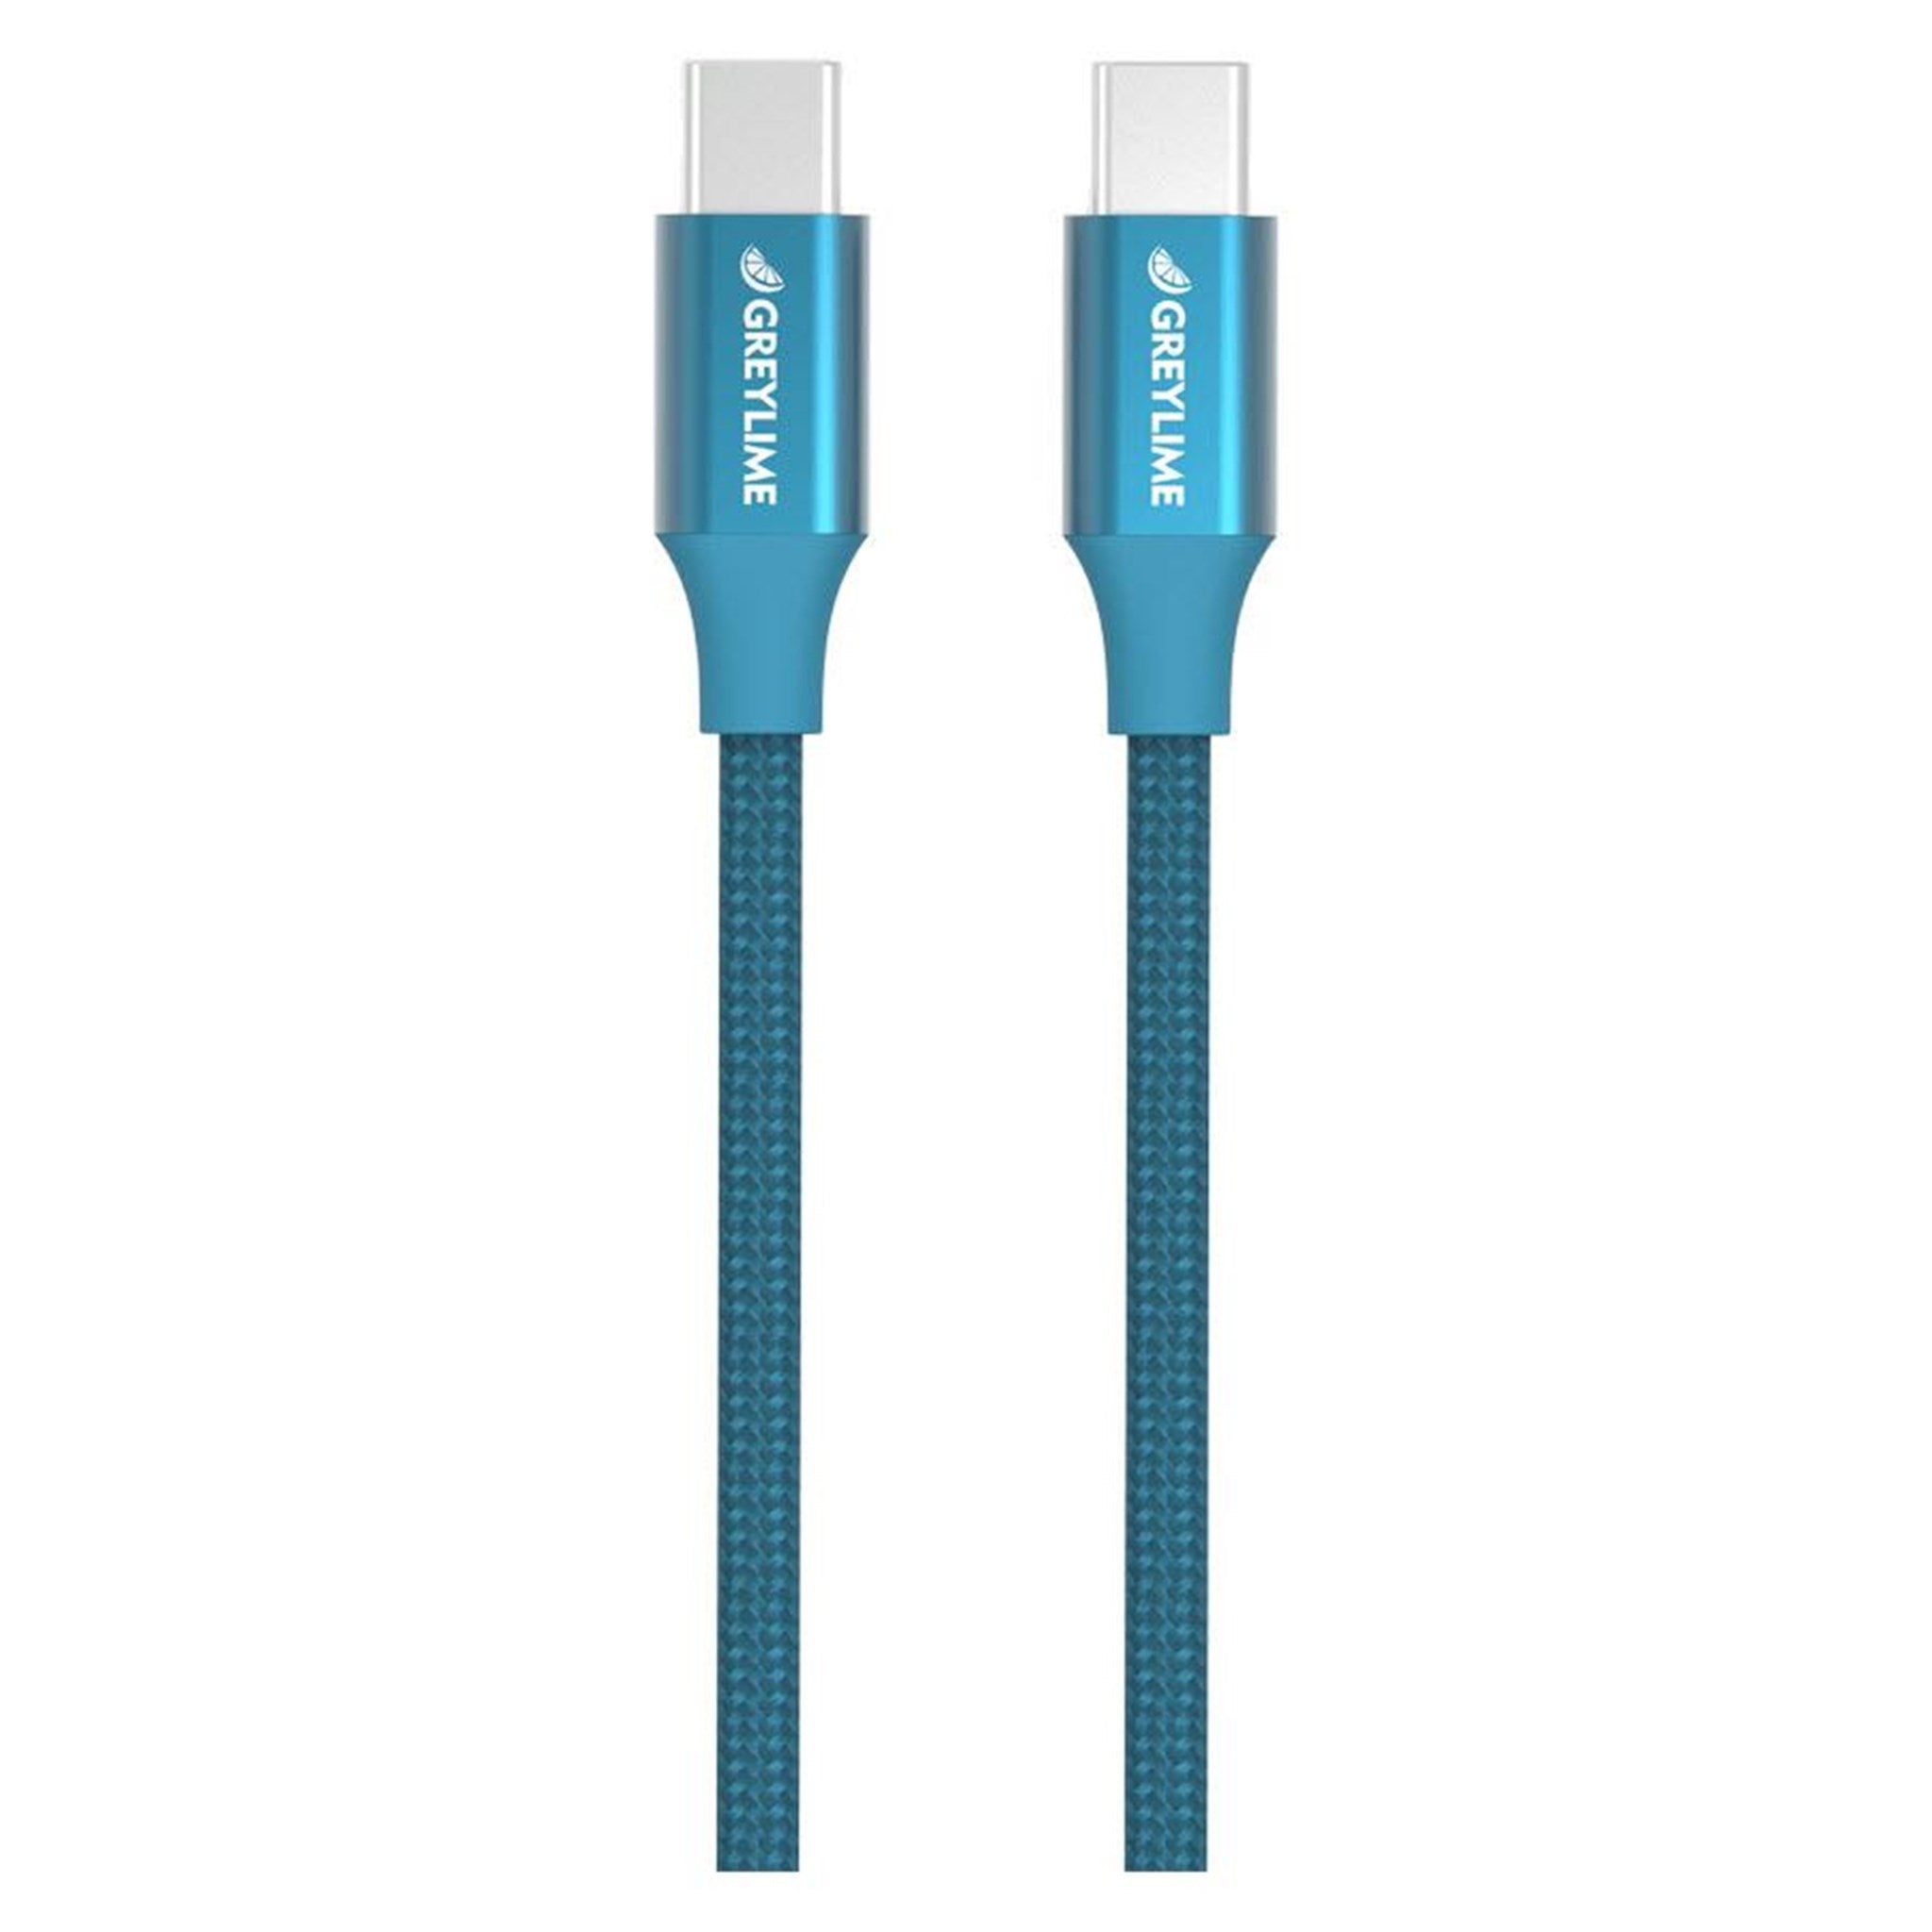 Billede af GreyLime Braided USB-C til USB-C 60W Kabel Blå 2 m hos GreyLime